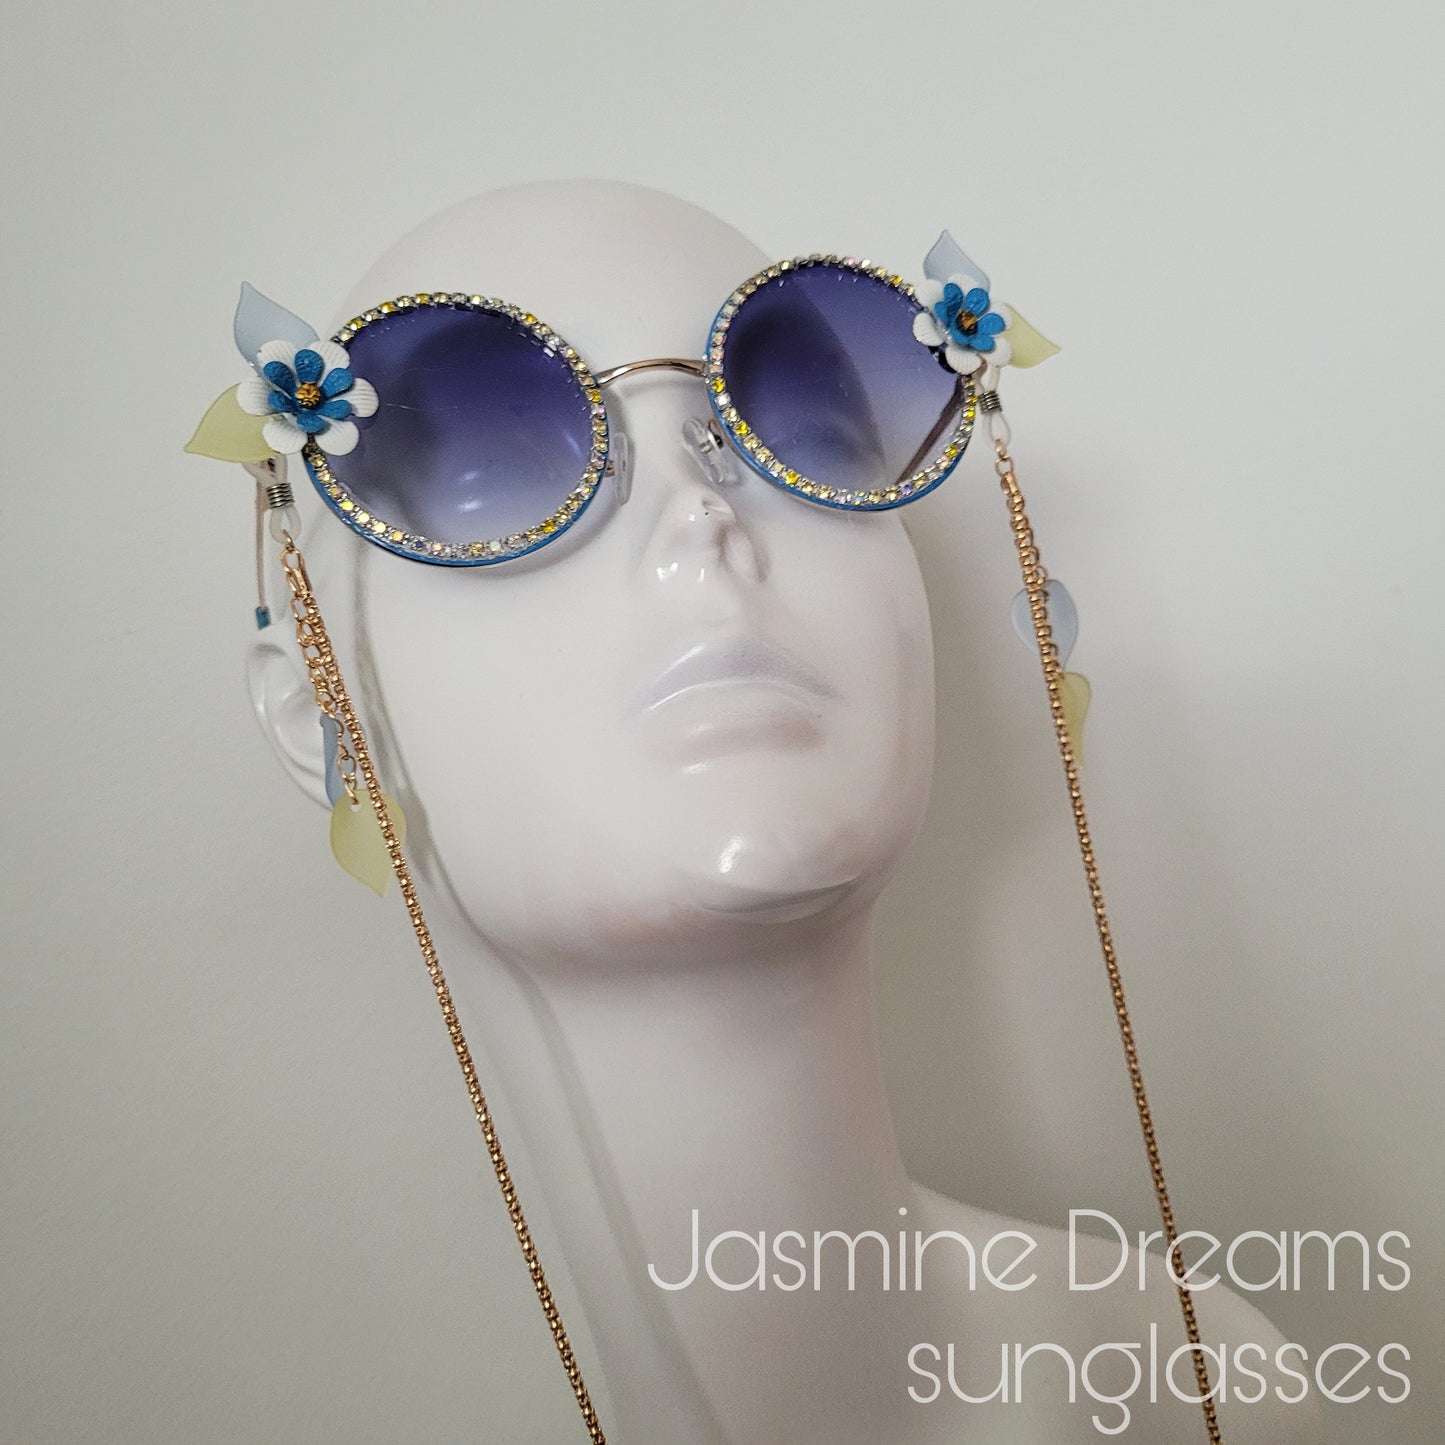 Bumblebee Dreams collection: the Jasmine Dreams Sunglasses (Göteborg 400 år edition)